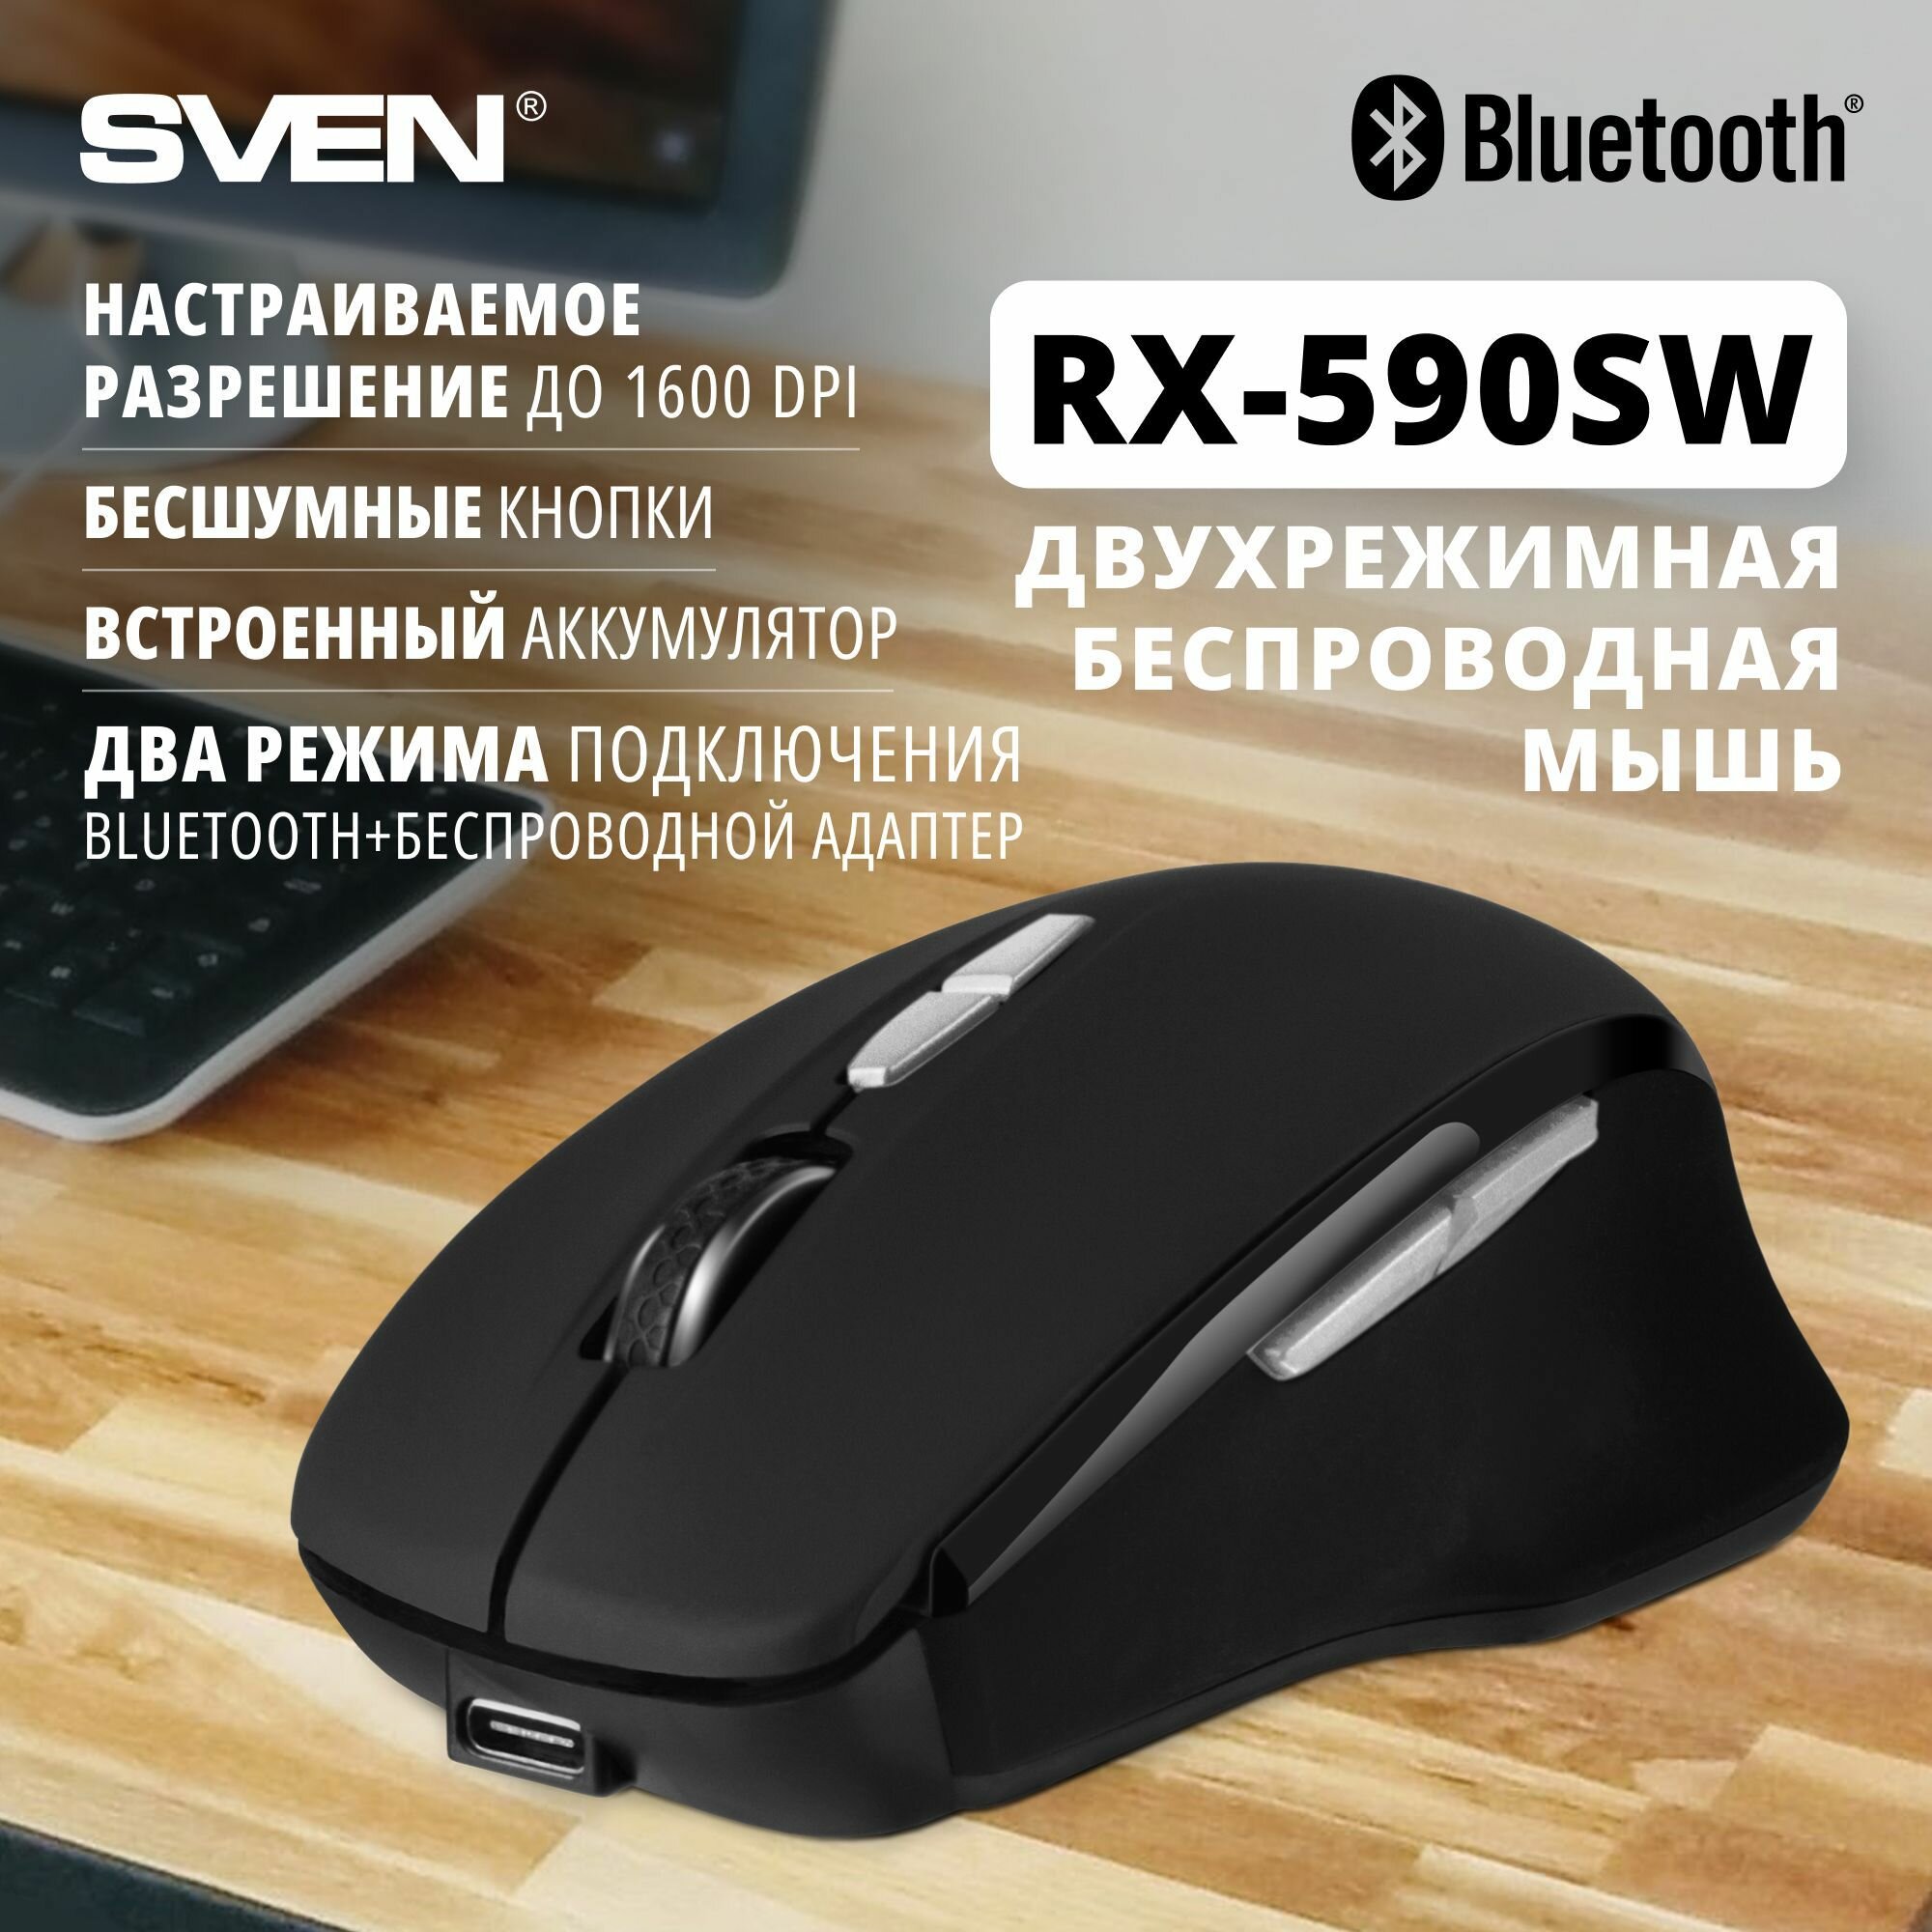 Мышь беспроводная Sven Rx-590sw черный (sv-018375) .